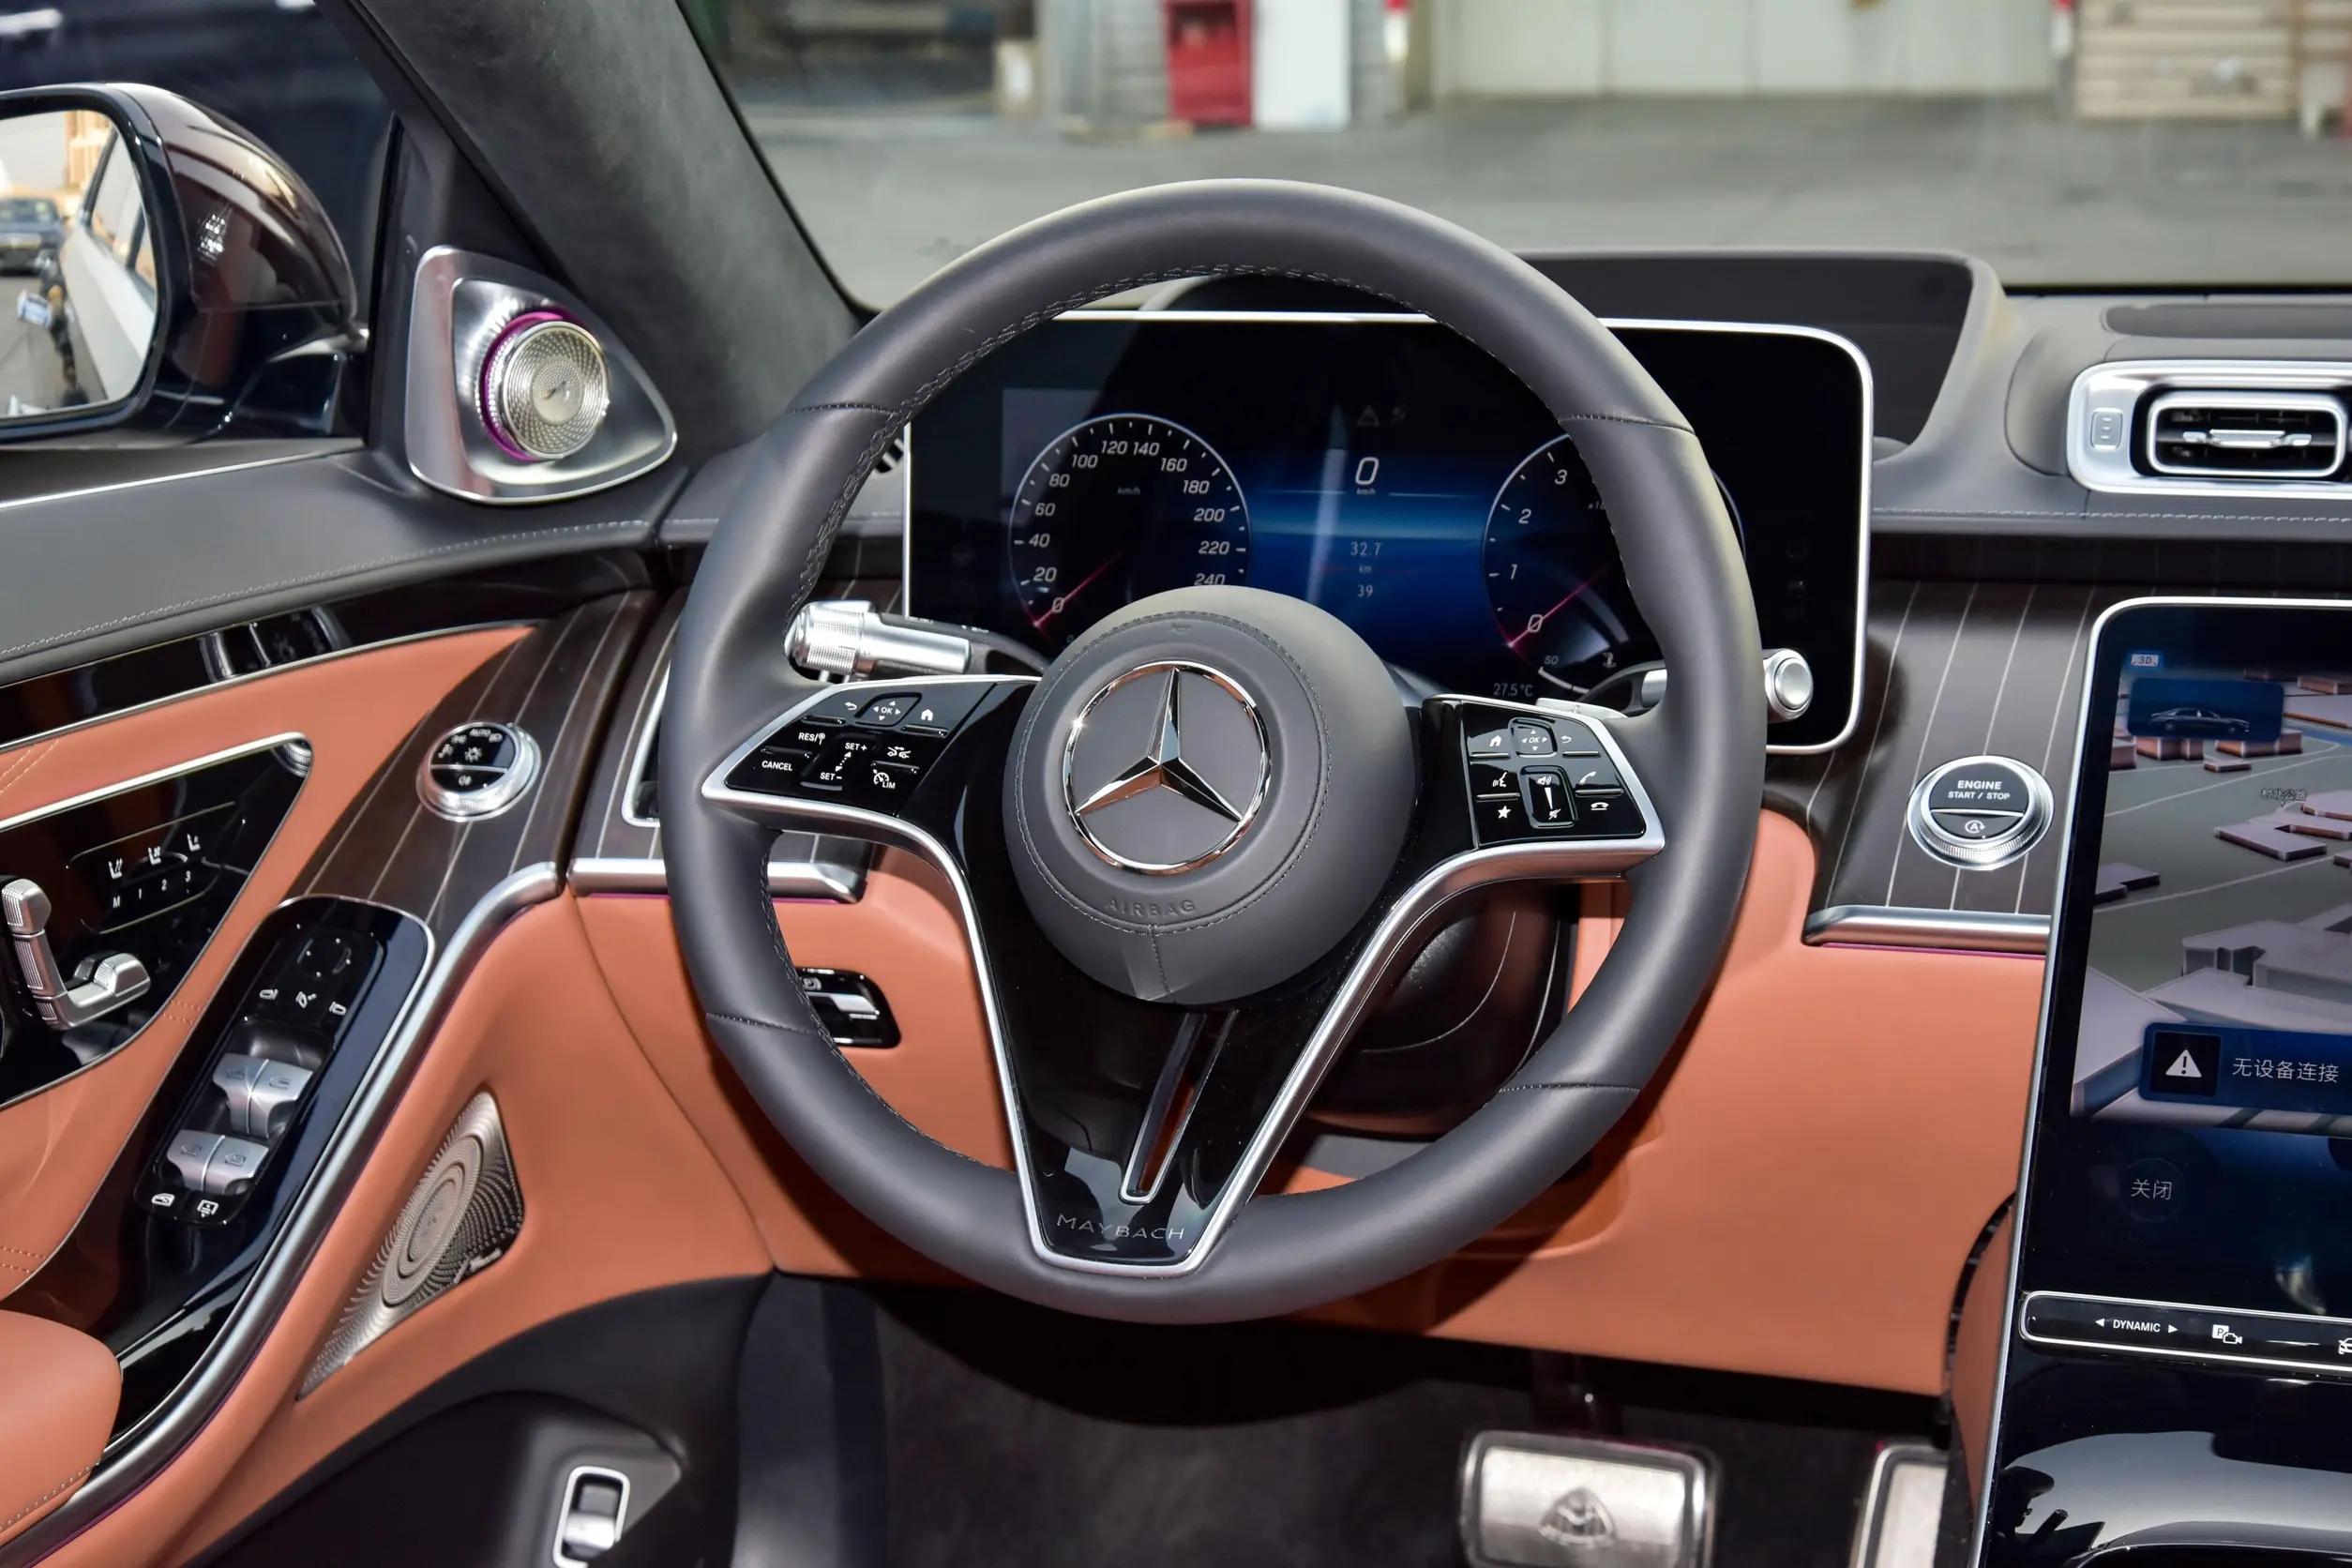 新款奔驰迈巴赫s级上市,配置/售价微调,售价468万